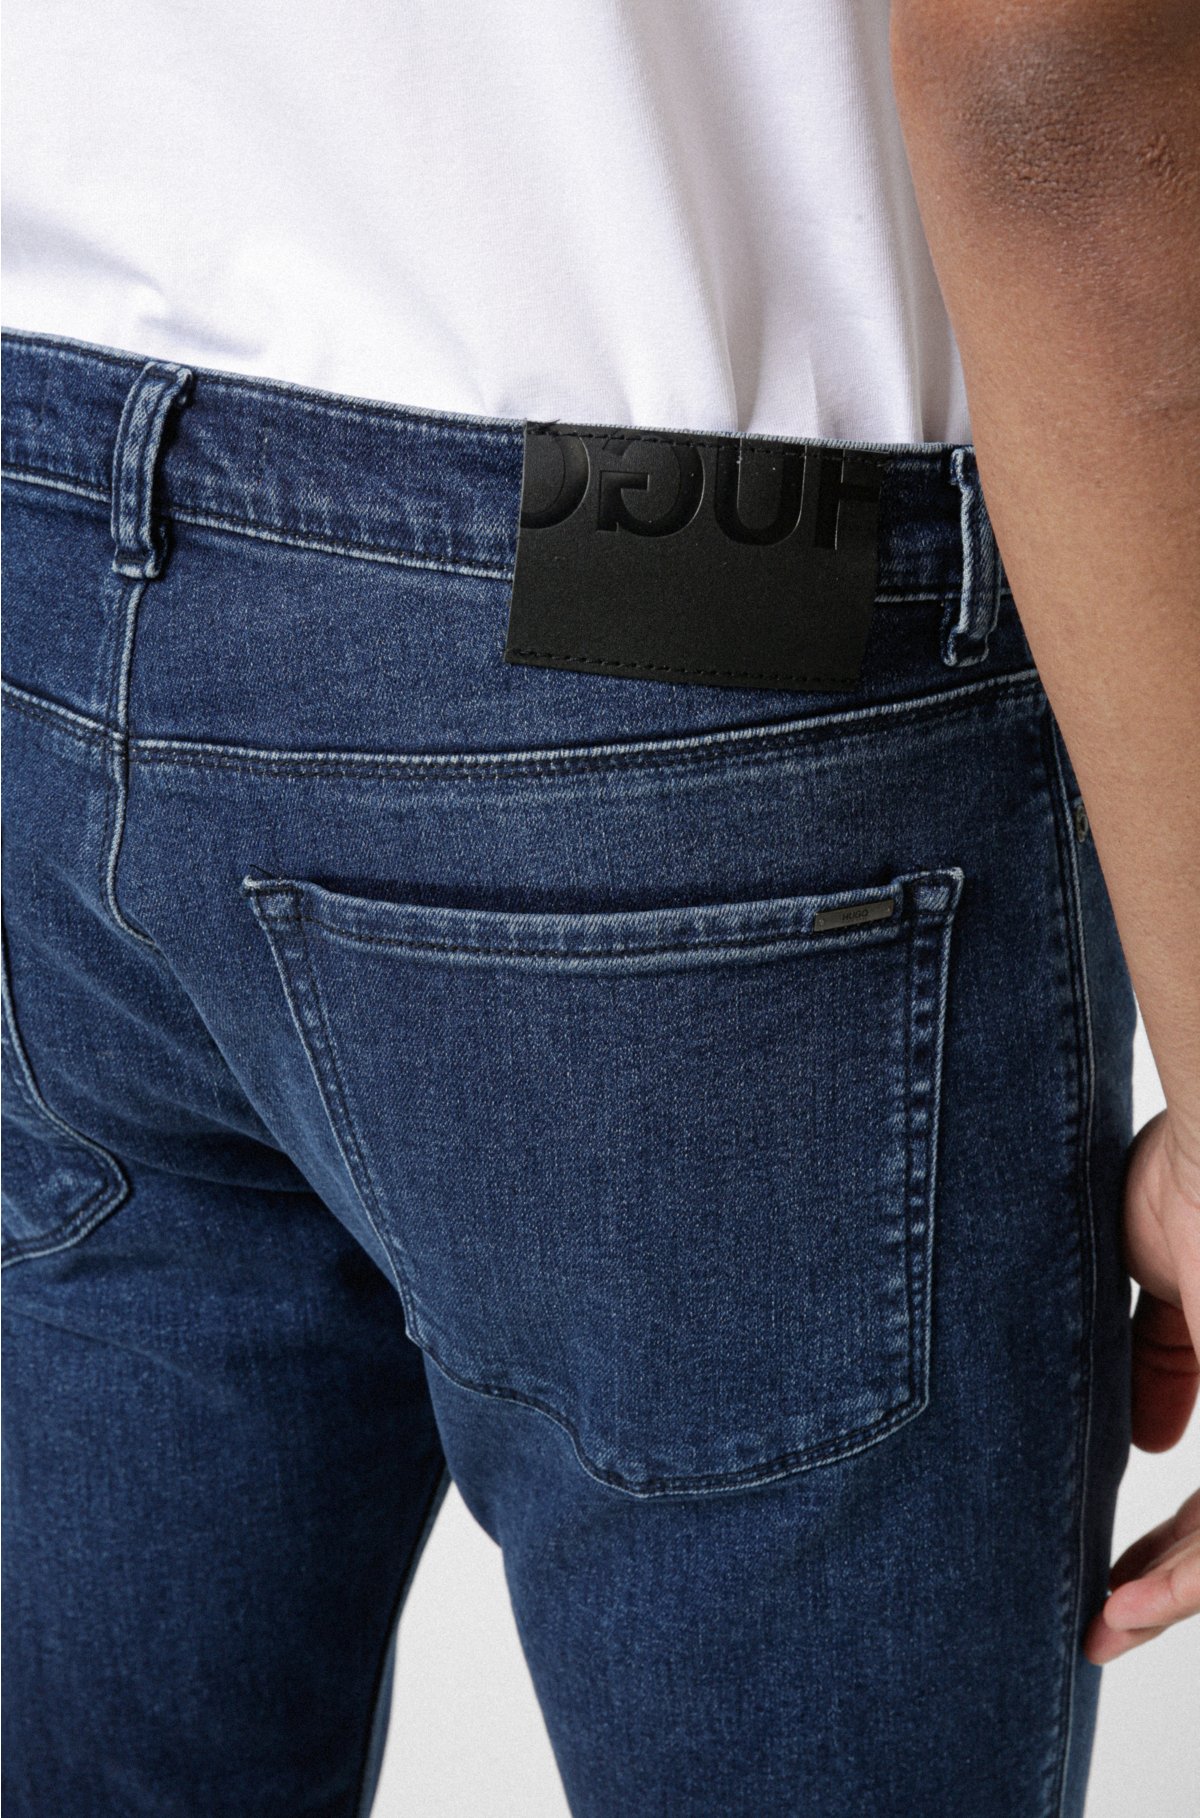 kalmeren Illustreren Herinnering HUGO - Mid-blue skinny-fit jeans in used-effect stretch denim